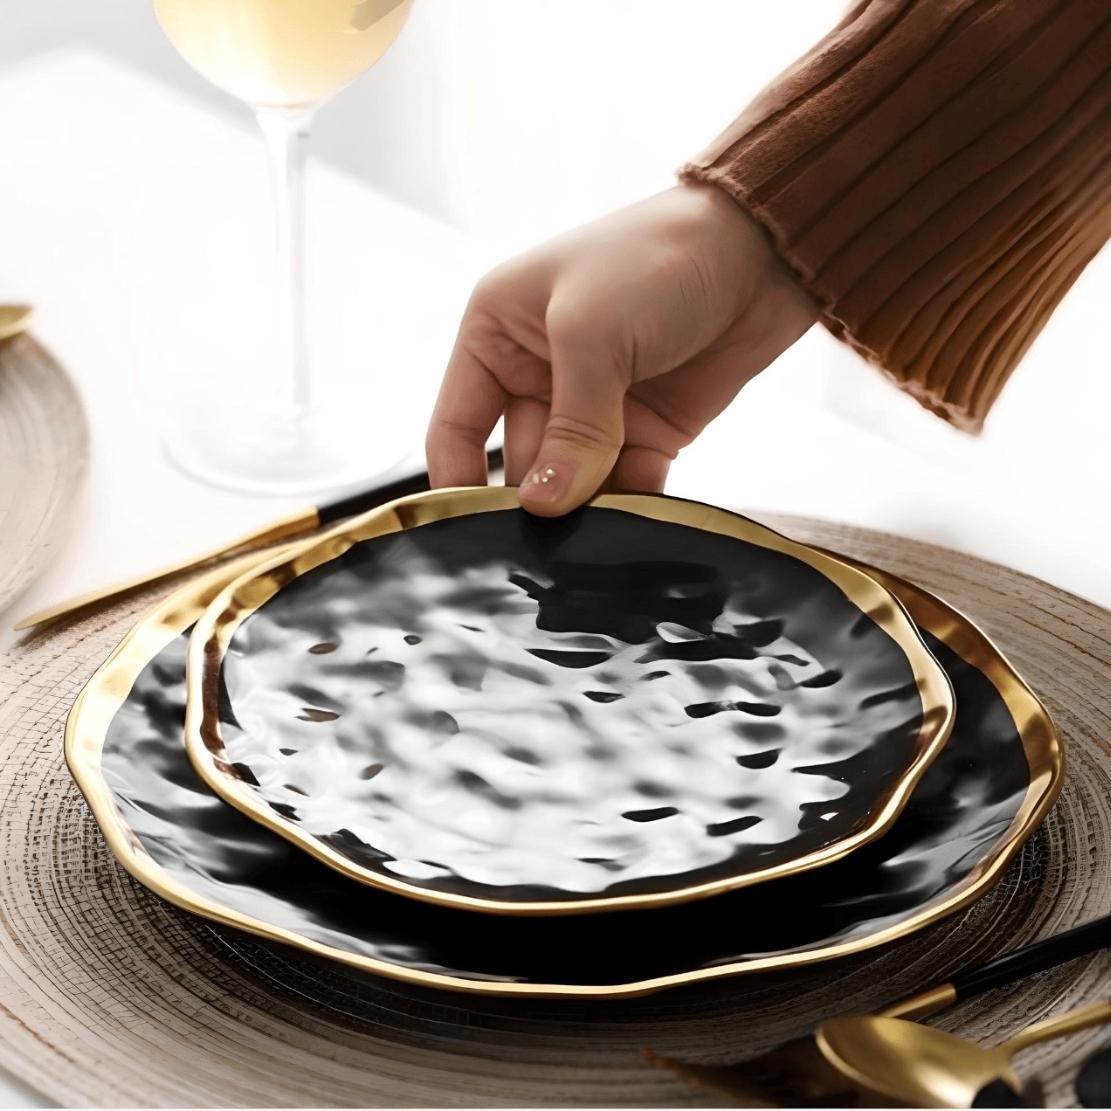 Elegant dining ware set / Black porcelain plate with gold rum